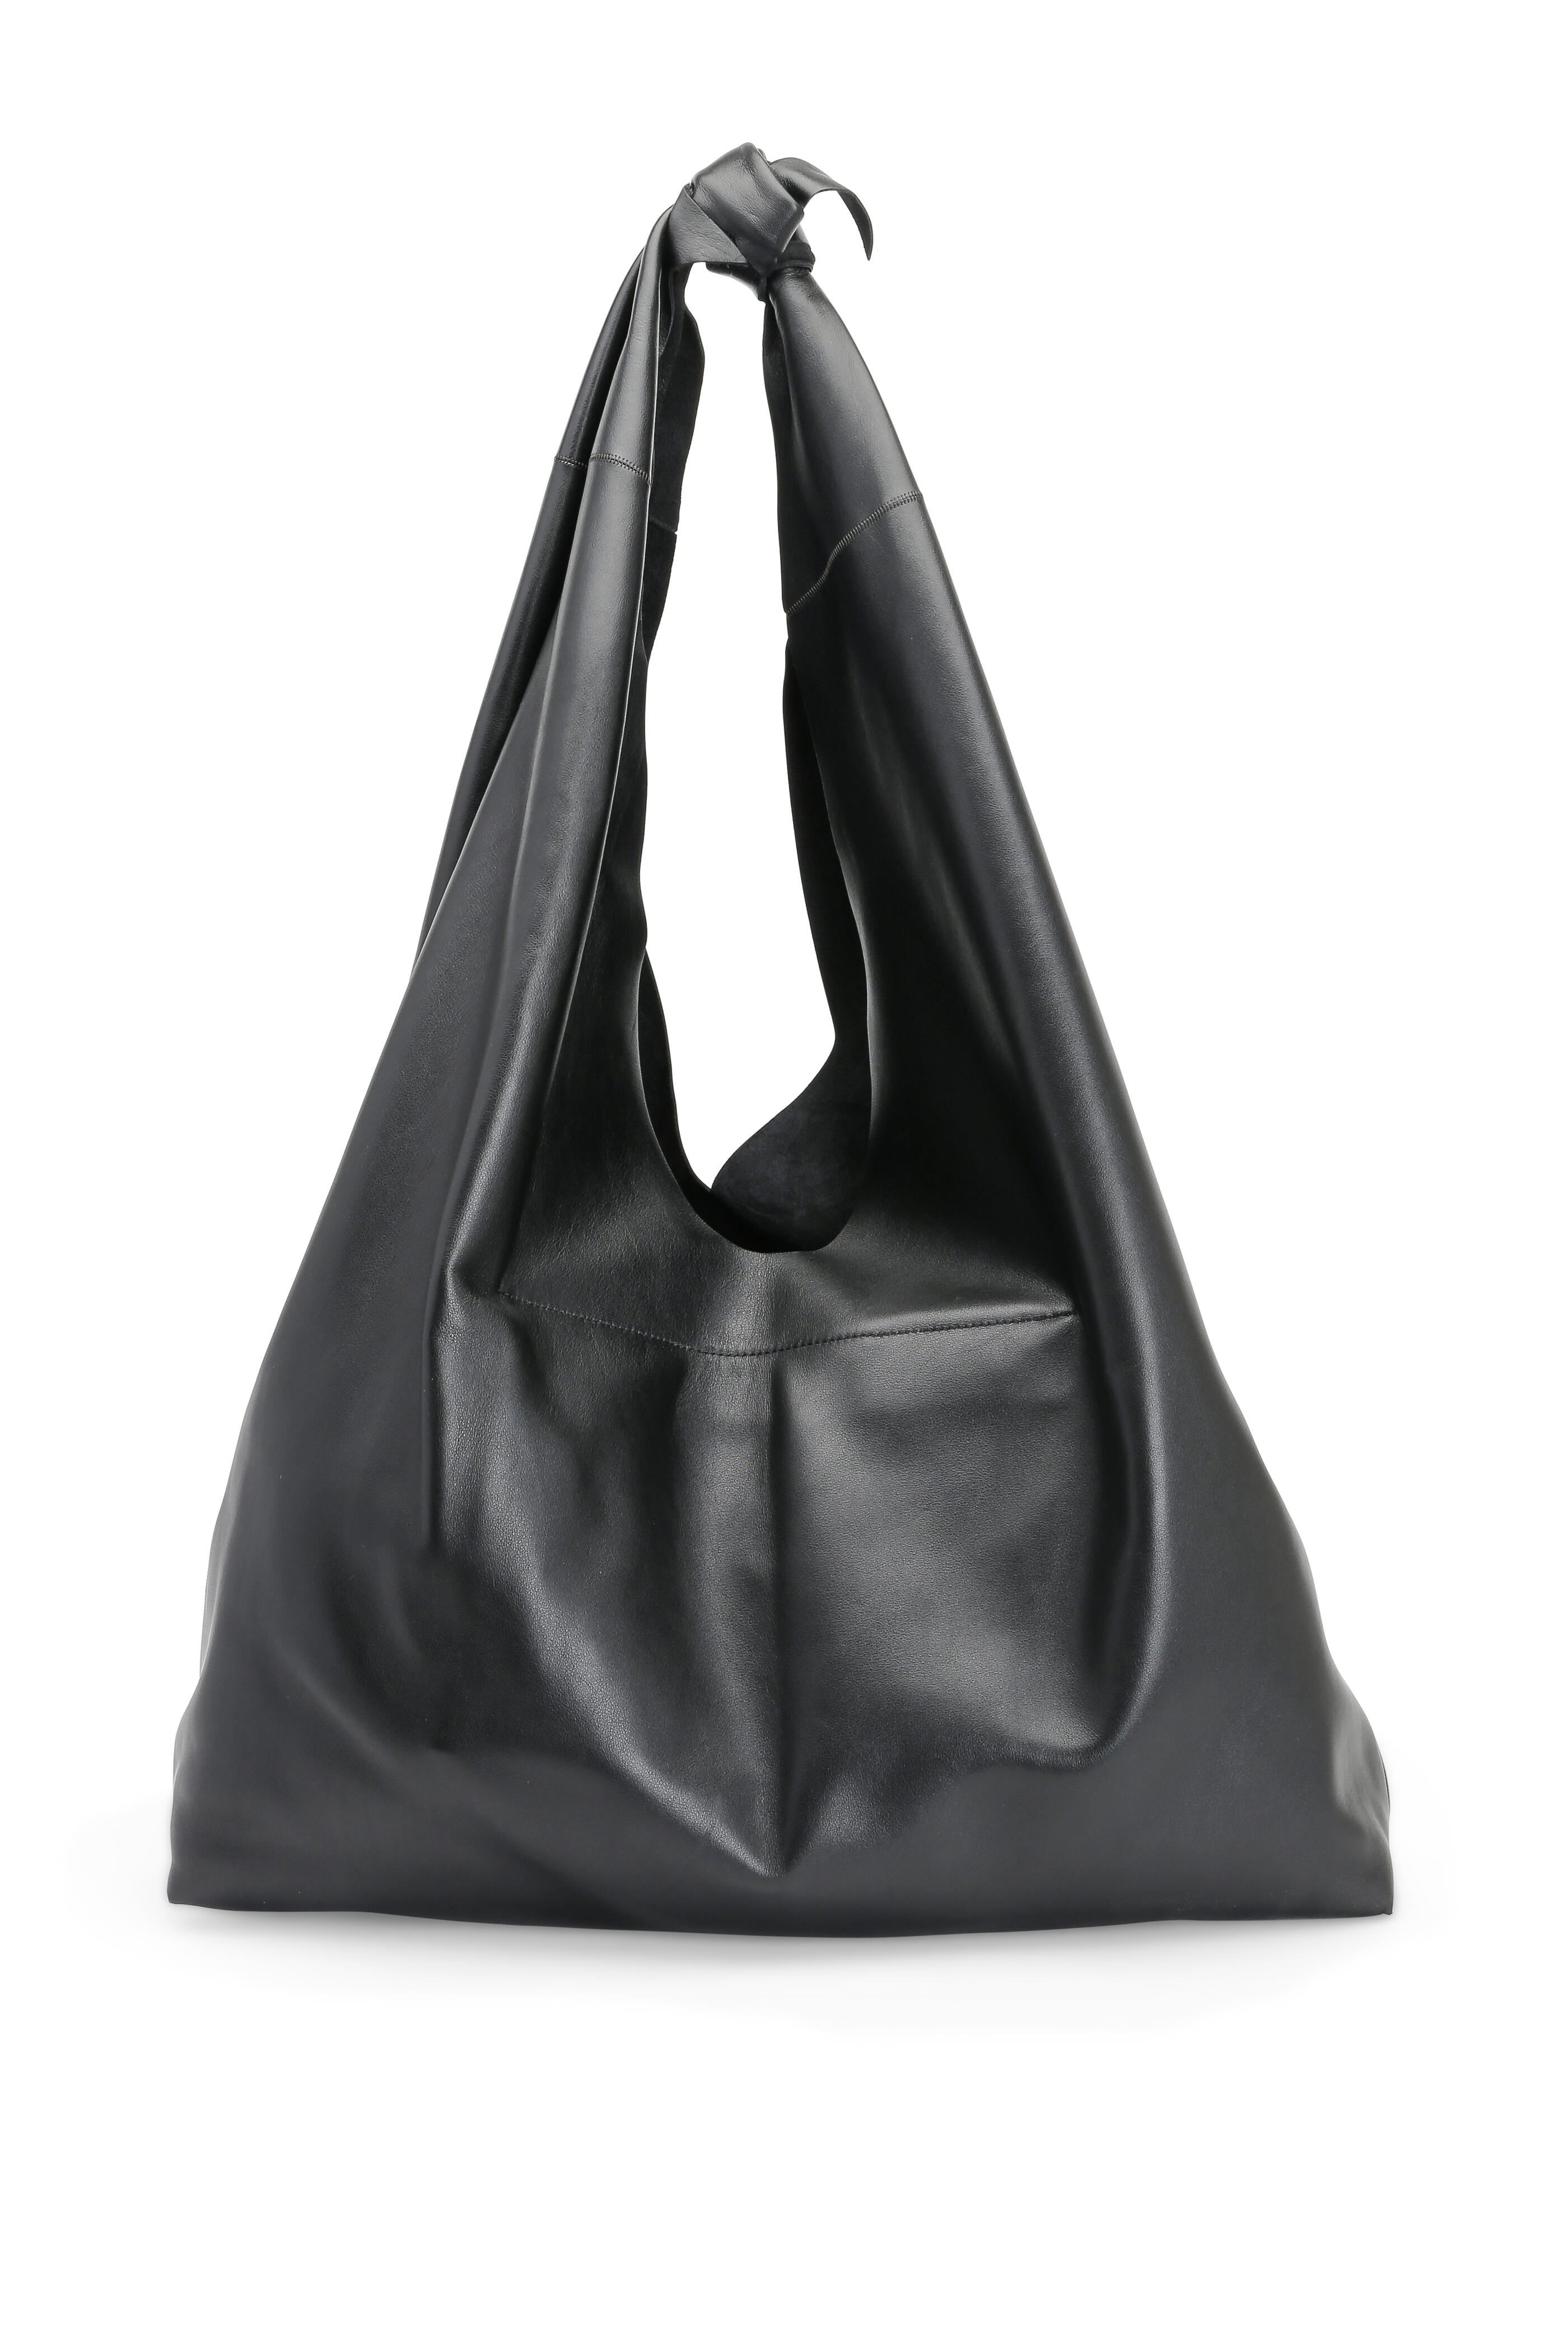 Women's Black Leather Hobo Bag